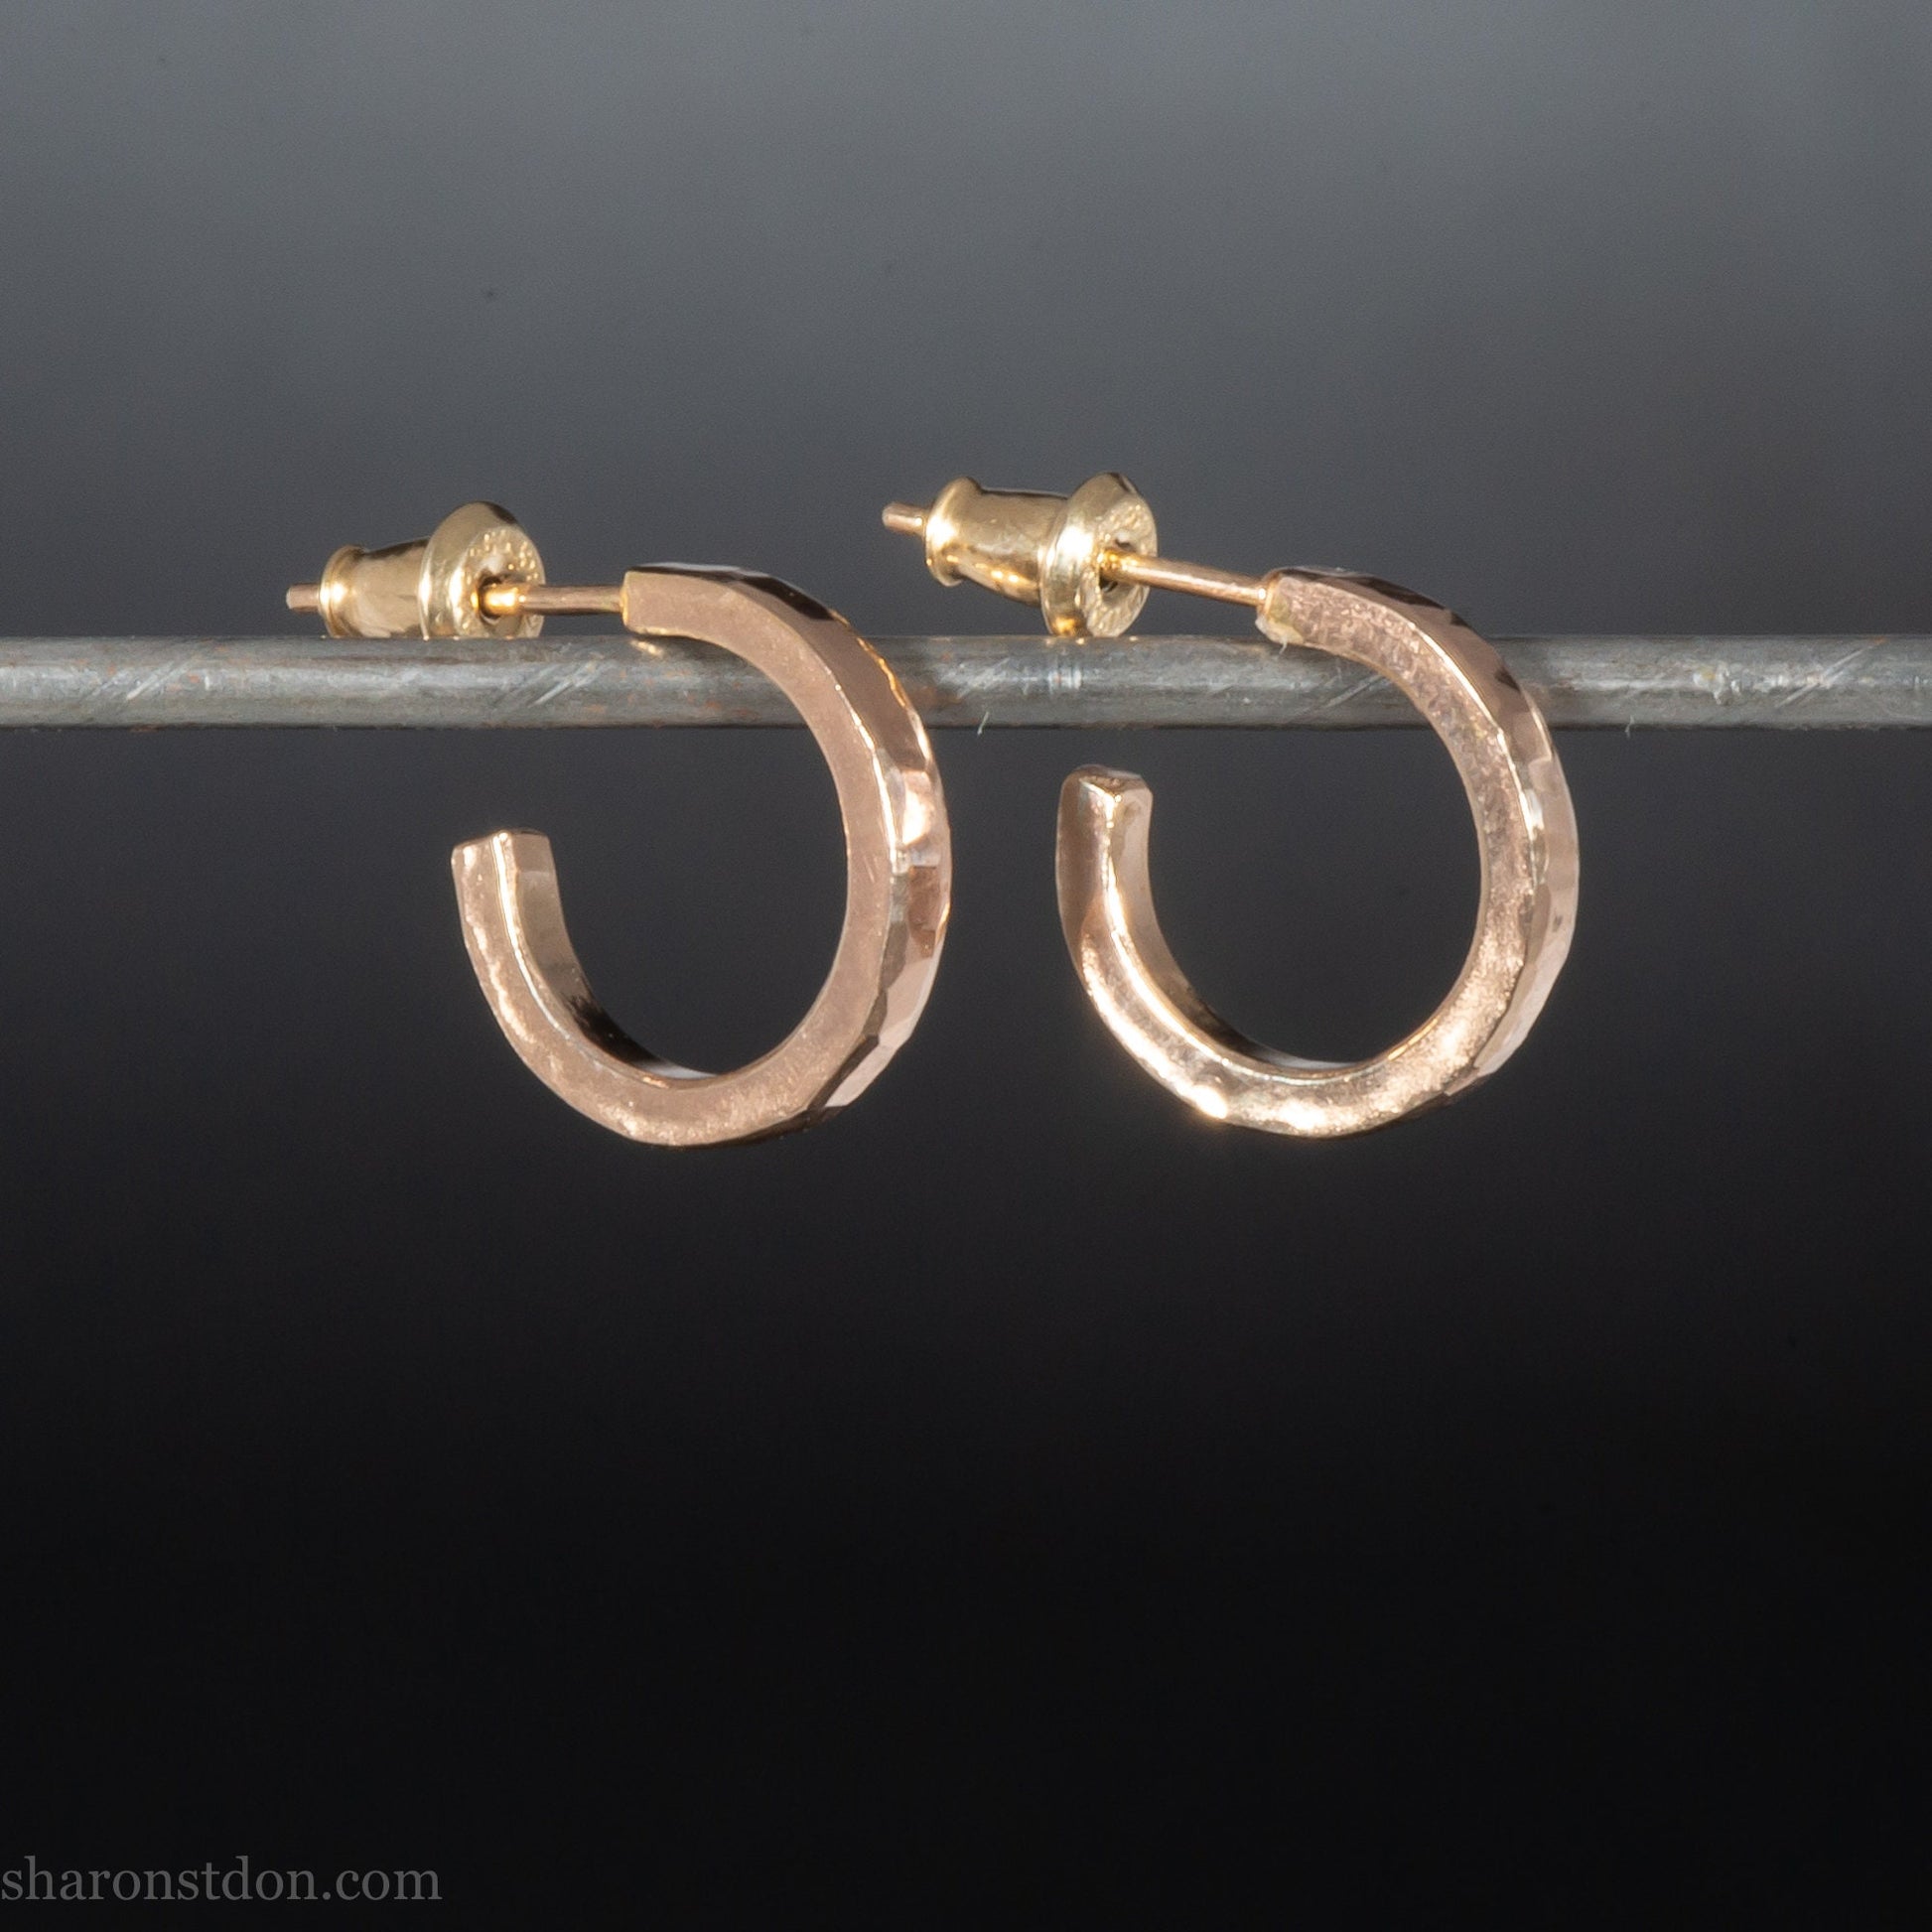 14mm x 2mm small 14k gold hoop earrings | Handmade, solid hammered gold hoop earrings | Handmade, eco conscious gift for men or women